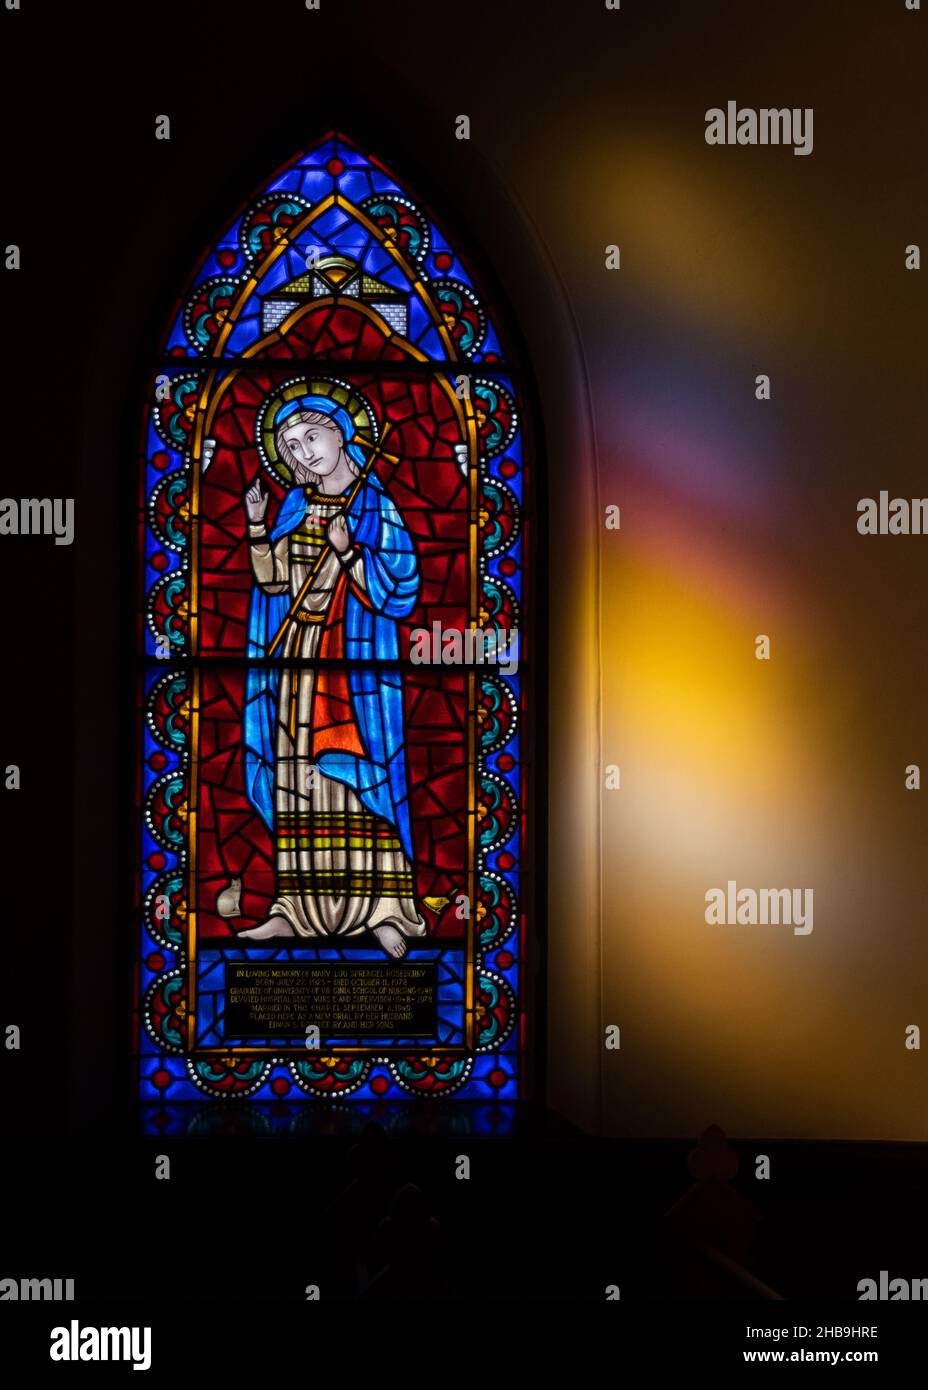 Buntglasfenster in der UVA-Kapelle (Universitätskapelle), University of Virginia, Charlottesville, VA Stockfoto